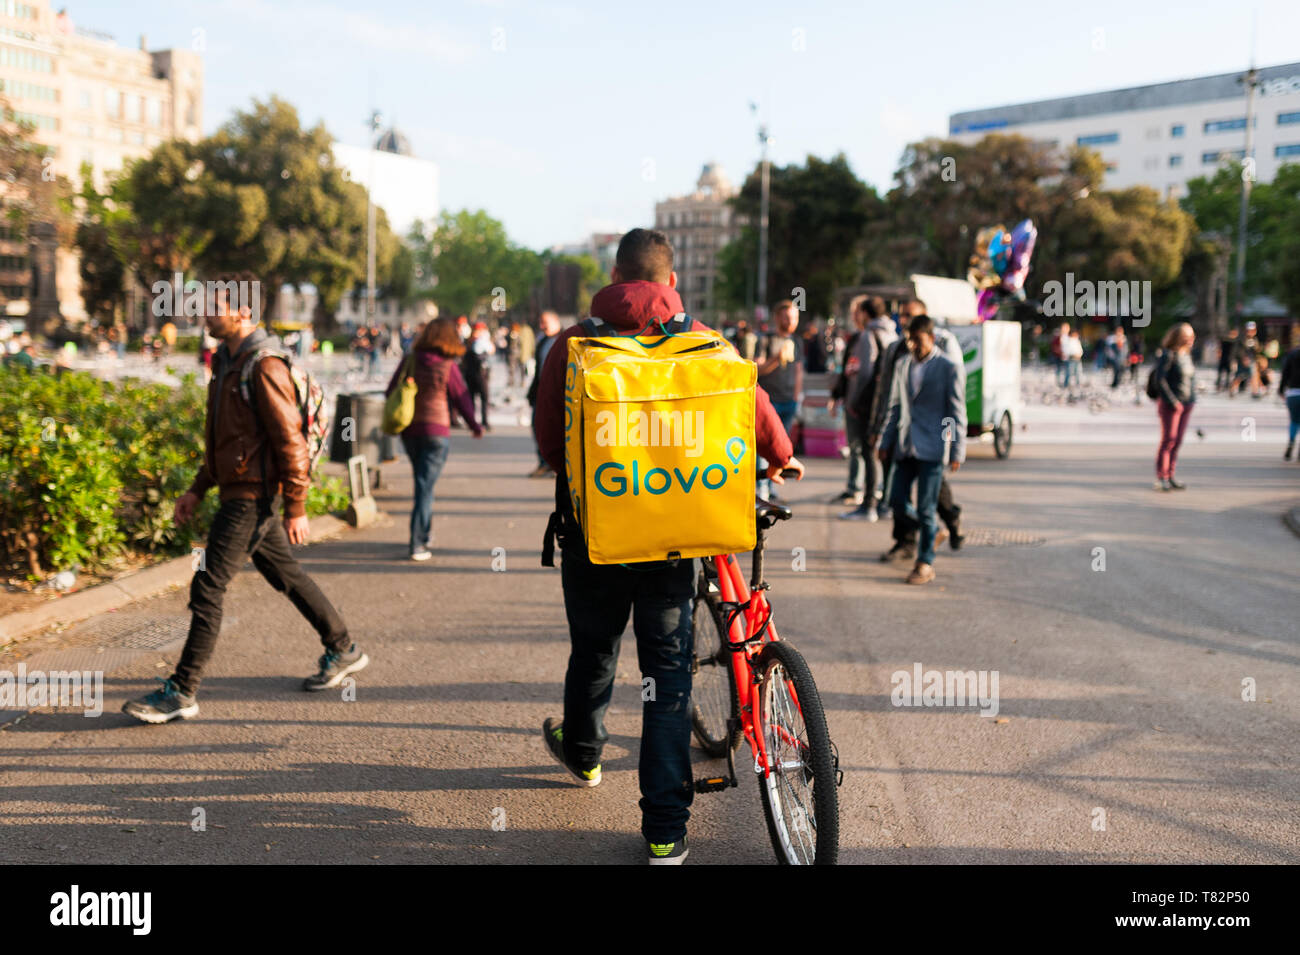 Bologne, Italie - 13 avril 2019 : jeune garçon glovo rider faire livraison sur son vélo travaillant dans la soi-disant économie concert place principale de Barcelone Banque D'Images